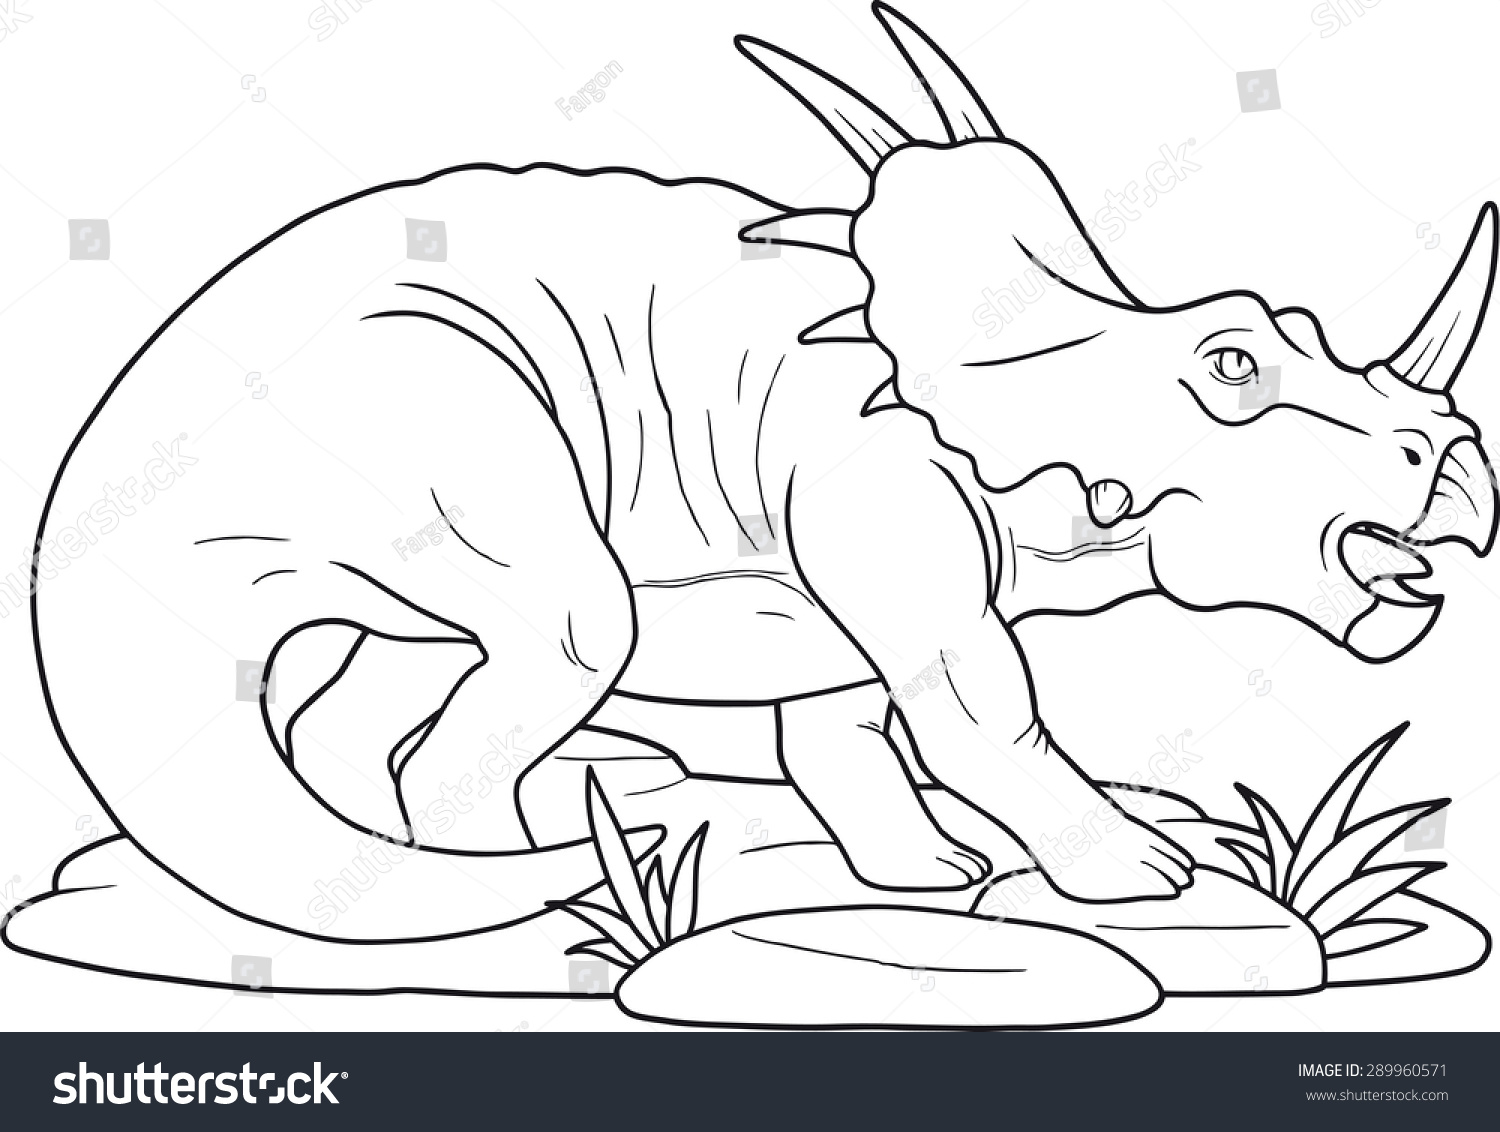 Стиракозавр раскраска для детей